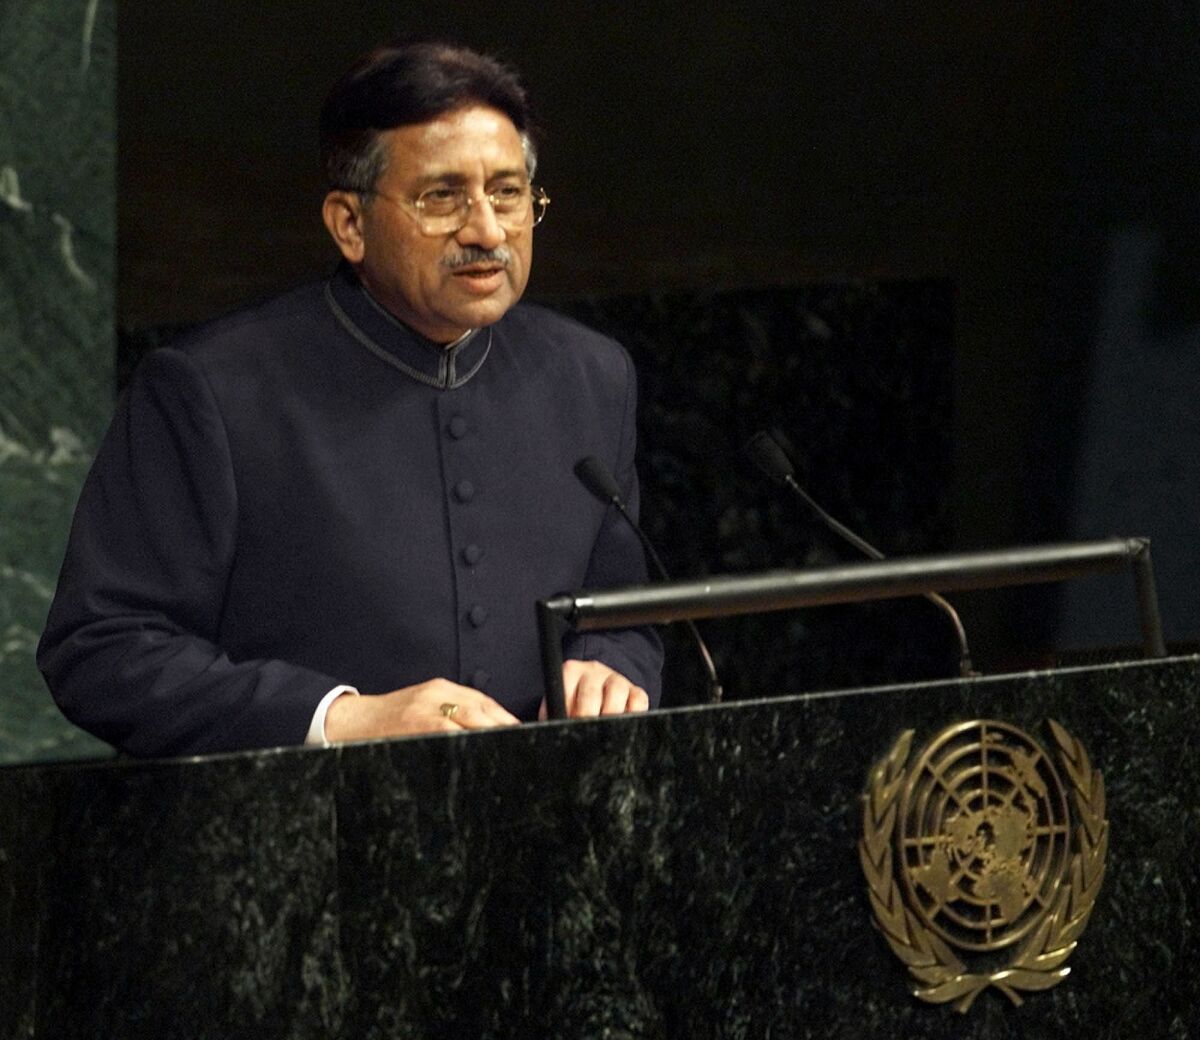 ARCHIVO - El presidente de Pakistán, el general Pervez Musharraf, se dirige a la Asamblea General de Naciones Unidas el 10 de noviembre de 2001 en la sede de Naciones Unidas en Nueva York. El general Pervez Musharraf, que ascendió al poder en un golpe de Estado sin derramamiento de sangre y después lideró a Pakistán para asistir a regañadientes en la guerra estadounidense en Afganistán contra el Talibán, ha muerto, según dijo una funcionaria el domingo 5 de febrero de 2023. Tenía 79 años. (AP Foto/Beth Keiser, Archivo)